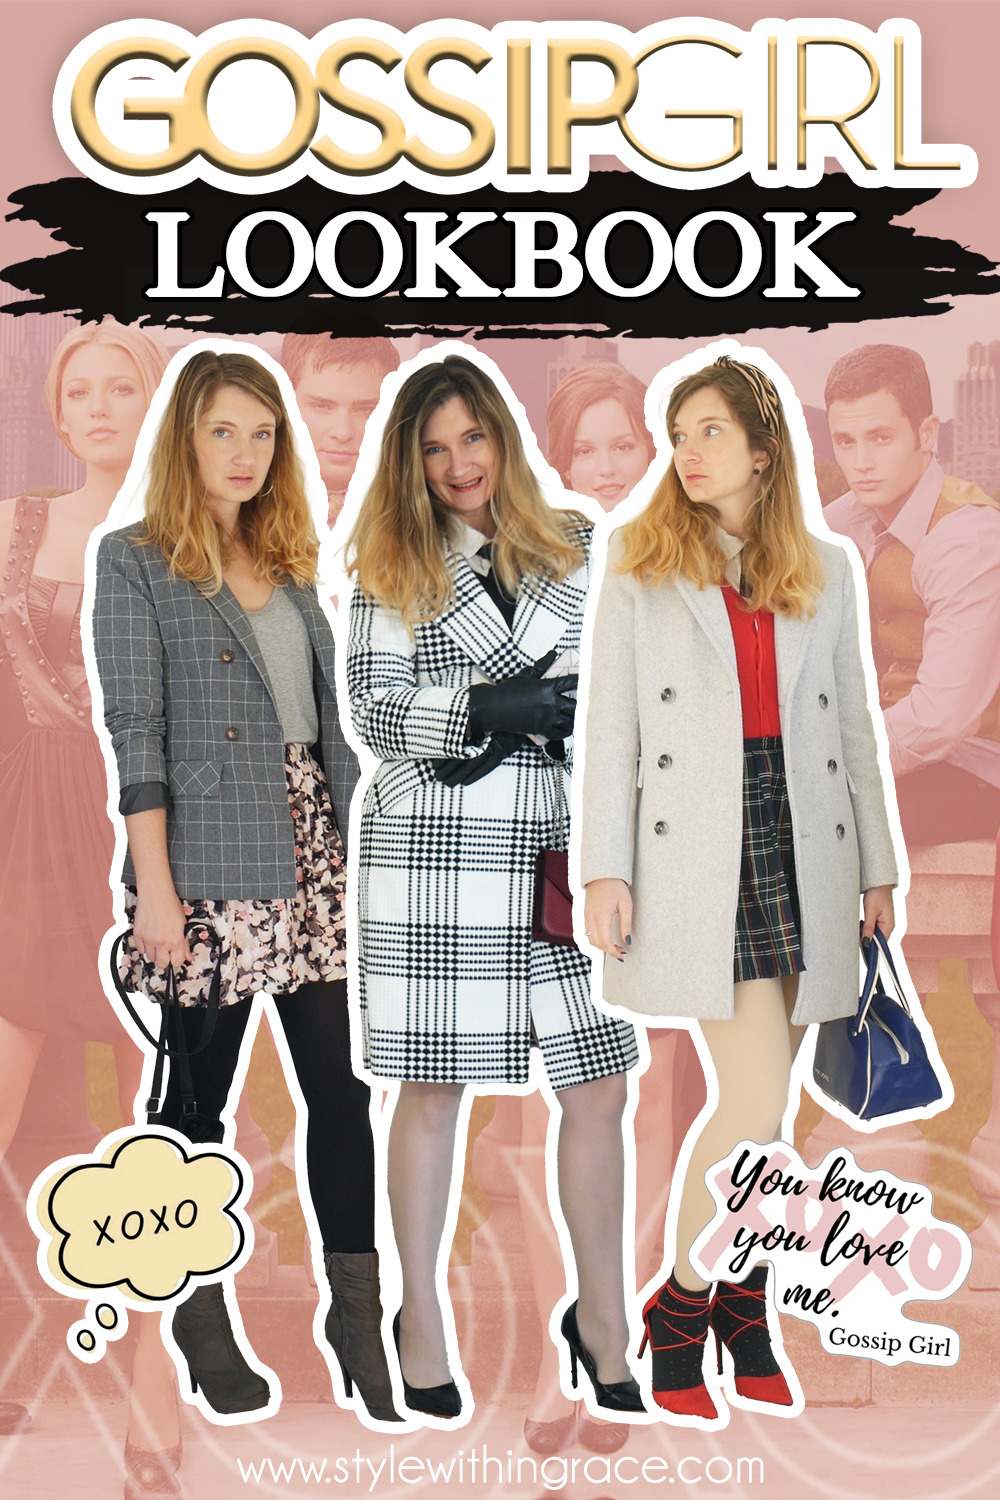 Gossip Girl Lookbook Pinterest Image